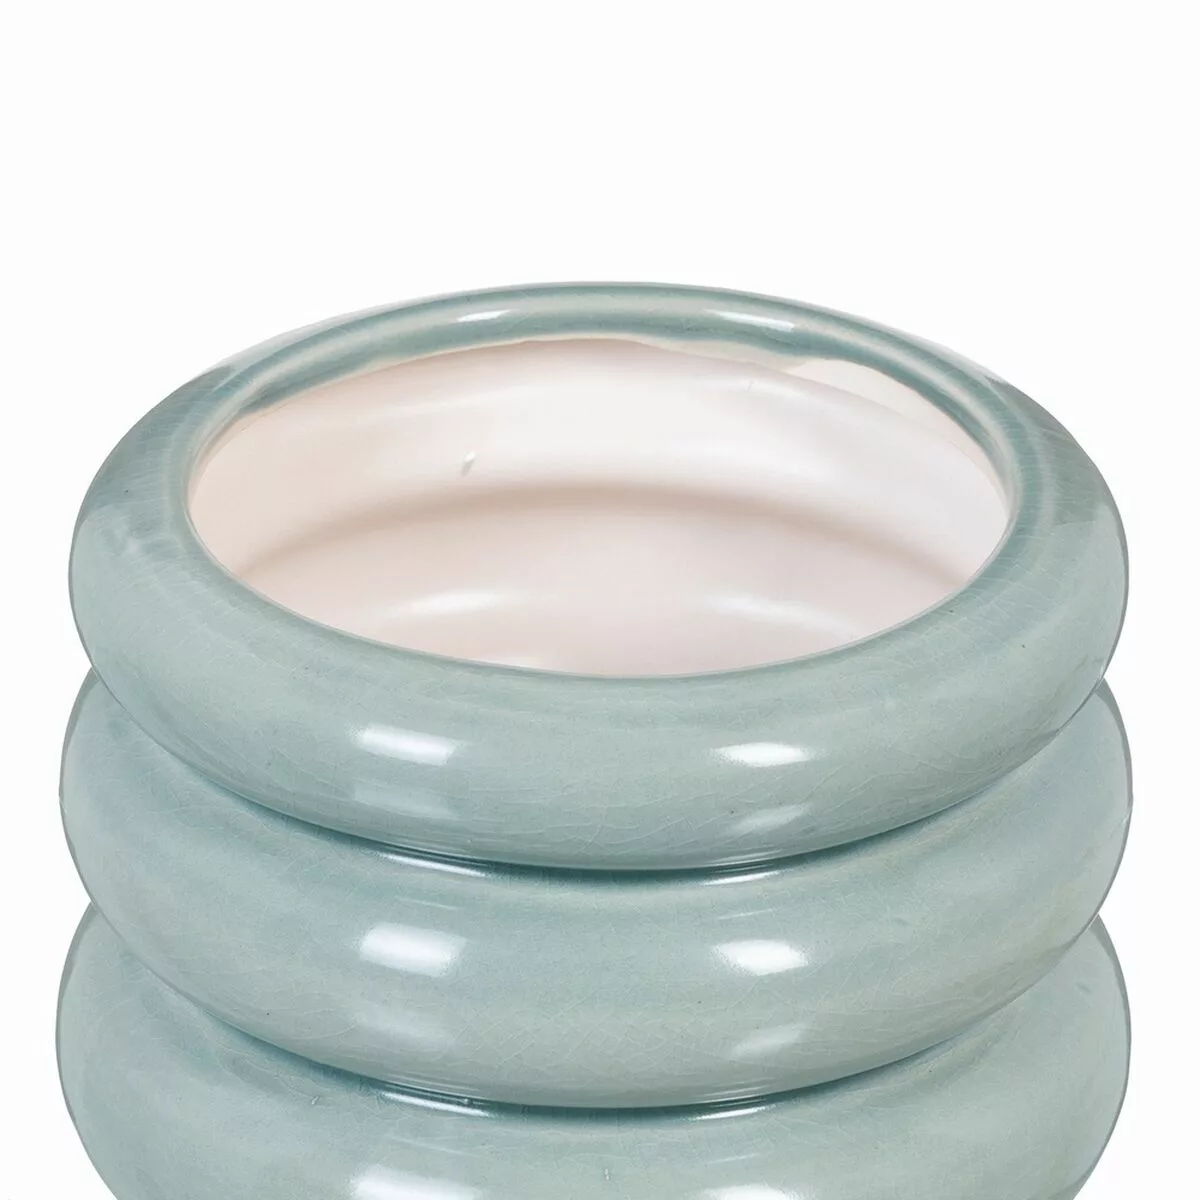 Vase 16,5 X 16,5 X 12,5 Cm Aus Keramik Blau günstig online kaufen